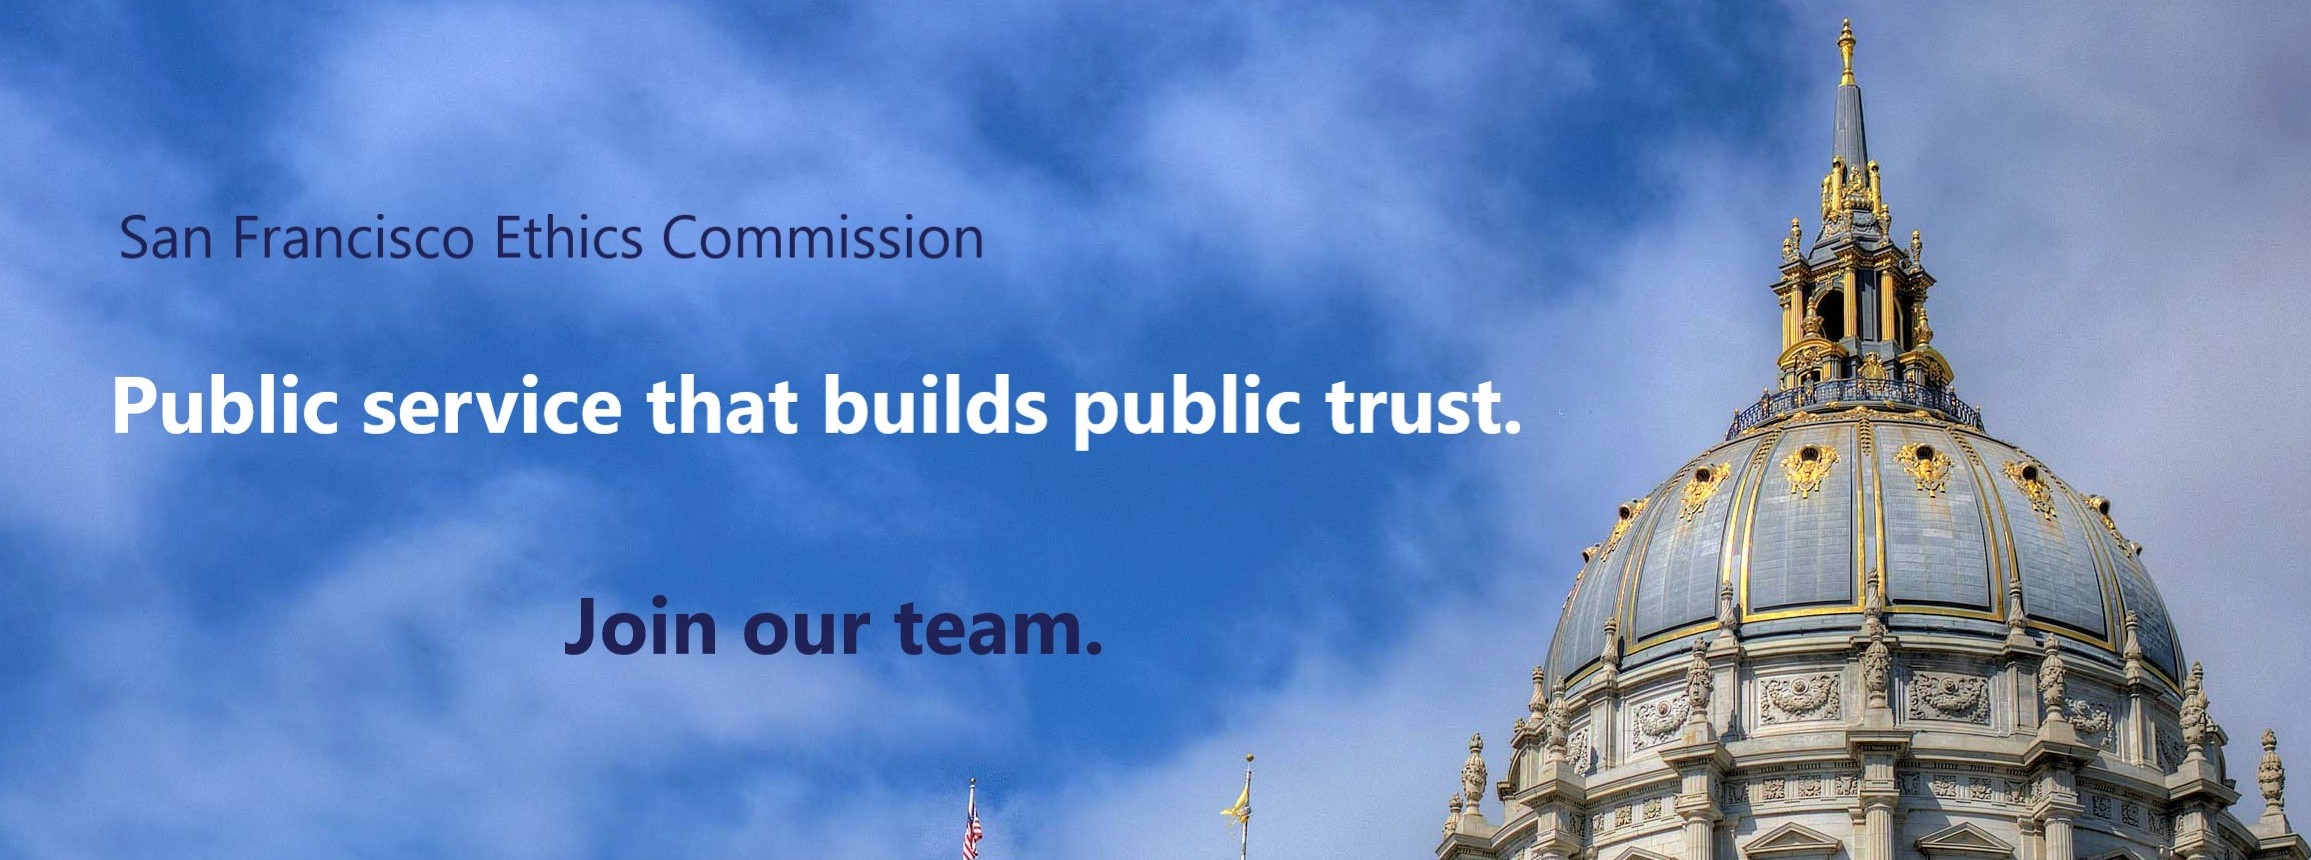 San Francisco Ethics Commission. Public Service that builds public trust. Join our team.